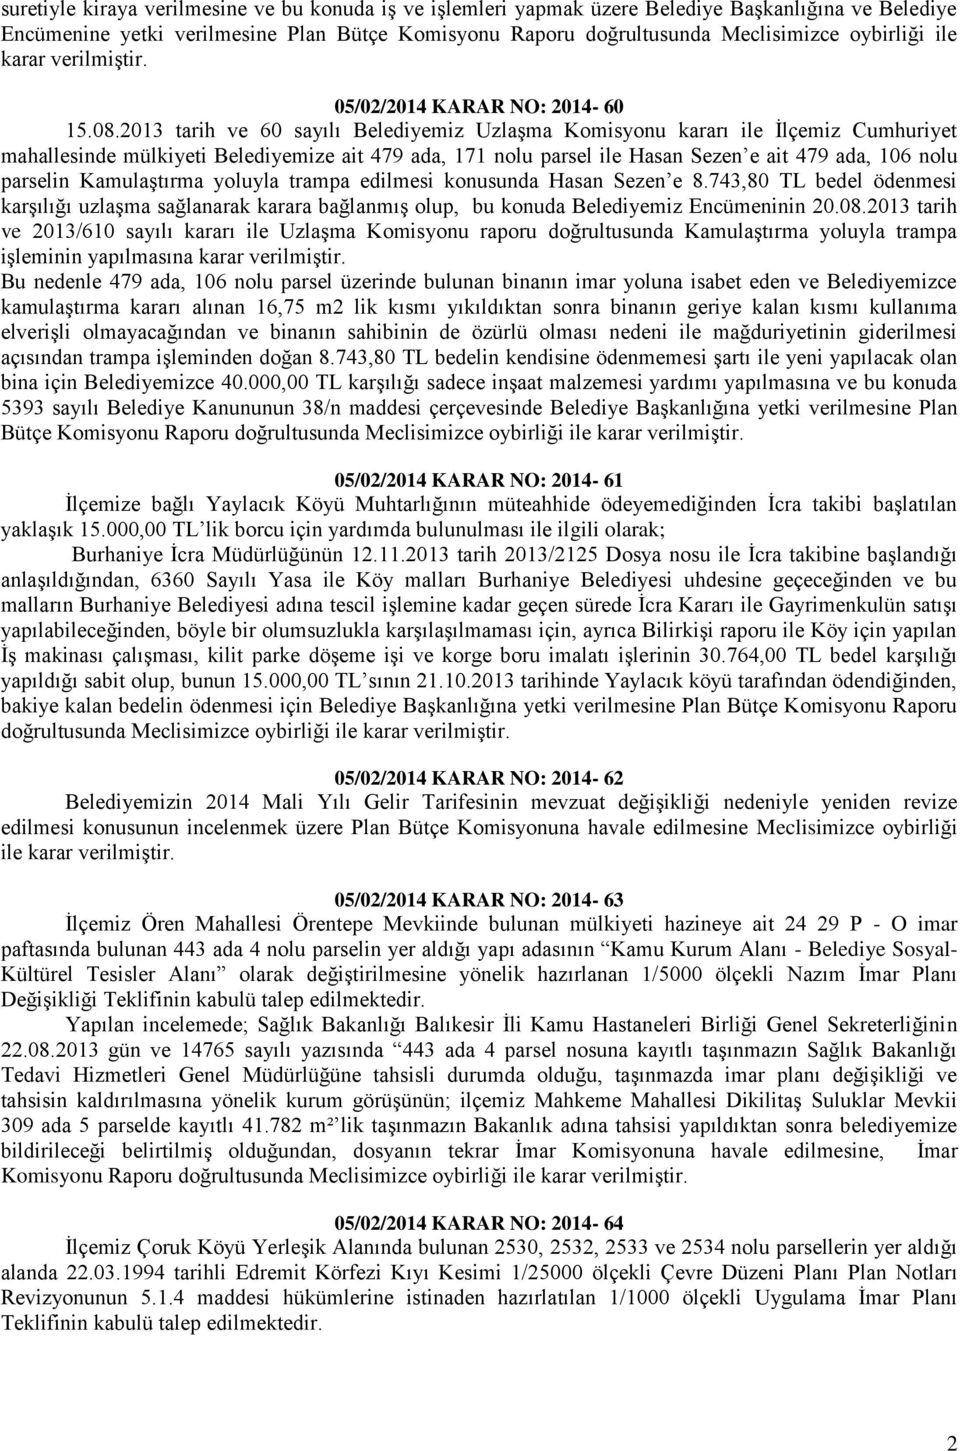 2013 tarih ve 60 sayılı Belediyemiz Uzlaşma Komisyonu kararı ile İlçemiz Cumhuriyet mahallesinde mülkiyeti Belediyemize ait 479 ada, 171 nolu parsel ile Hasan Sezen e ait 479 ada, 106 nolu parselin